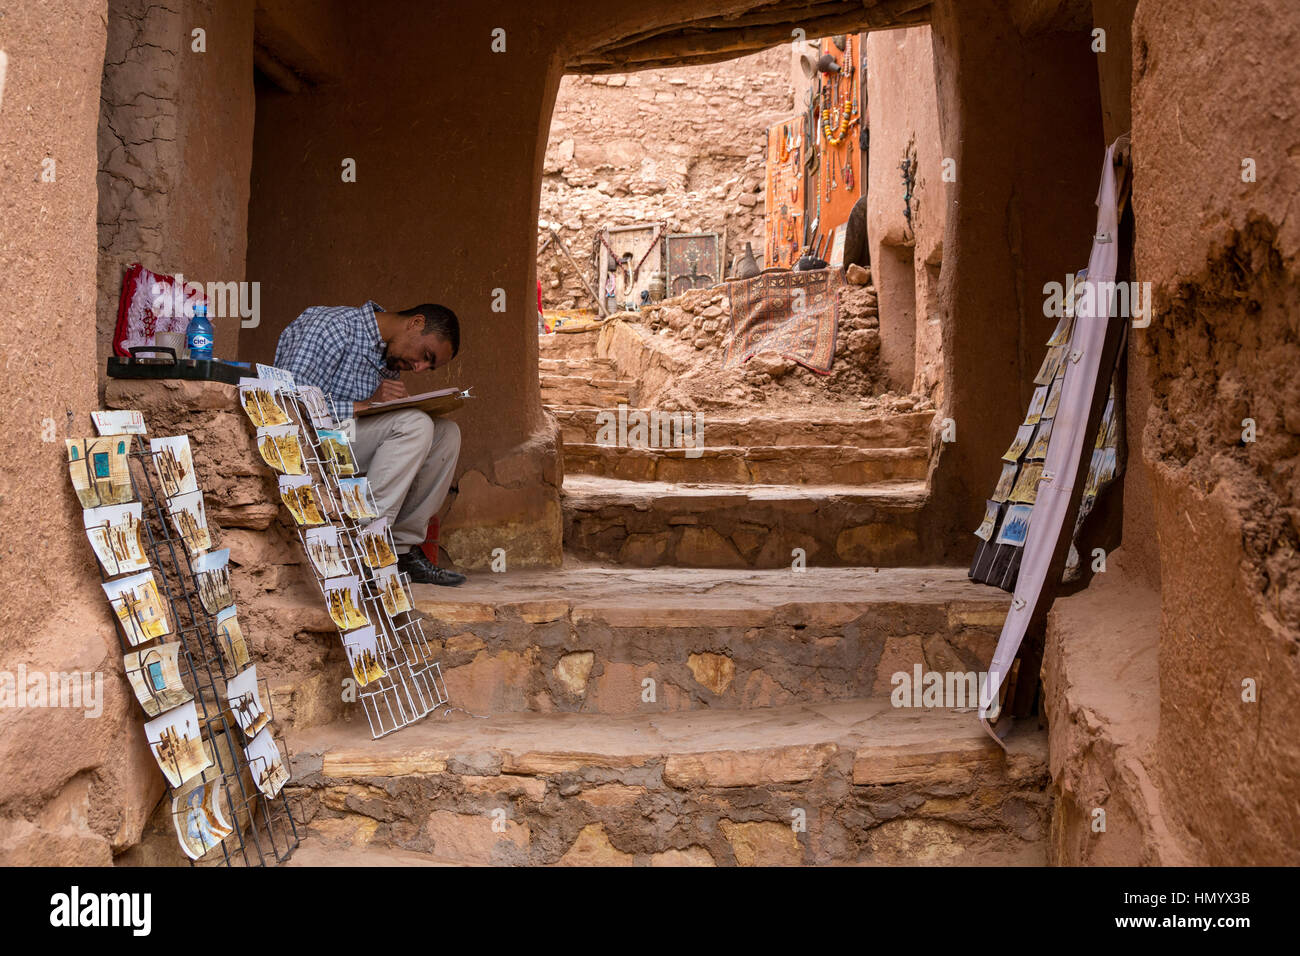 Le Maroc. Vendeur dans l'espoir de vendre des cartes postales et de travail artistique. Ksar Ait Benhaddou, un site du patrimoine mondial. Banque D'Images